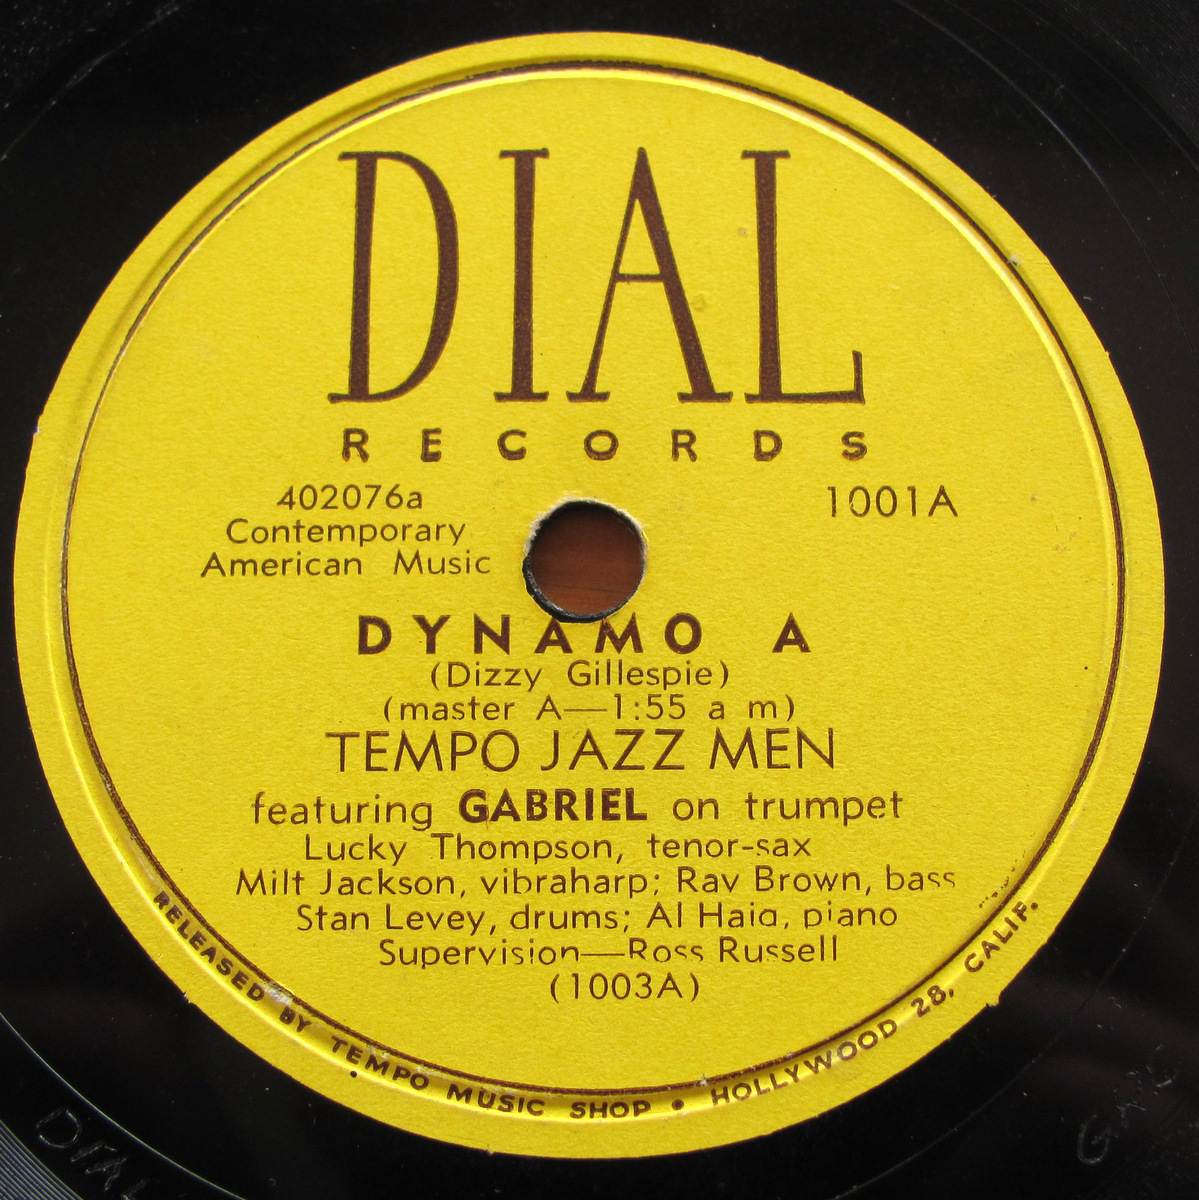 低価格の 【レコード】78rpm SP盤 Dial 1001 Dizzy Gillespie Milt Jackson Al Haig Lucky Thompson Dynama A & B ジャズ